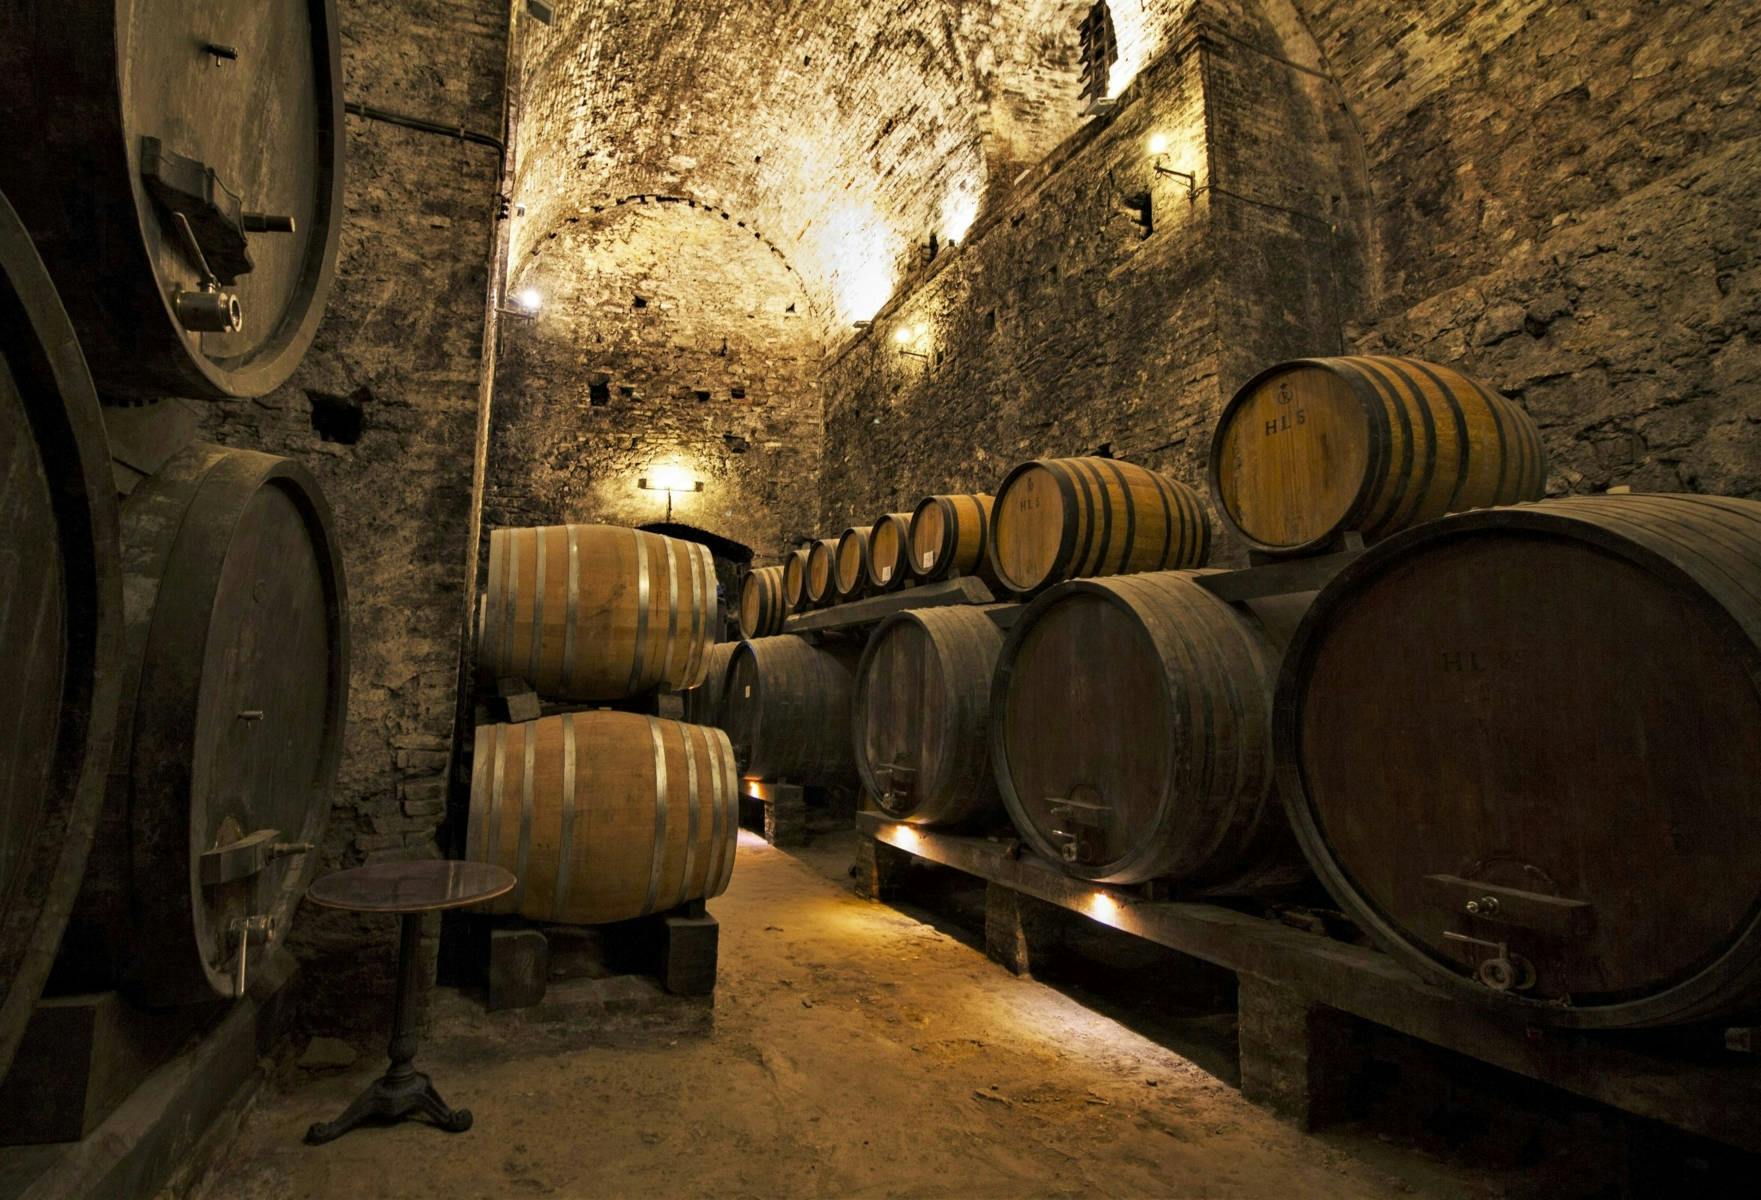 Rondleiding door Montepulciano en Montalcino met wijnproeverij